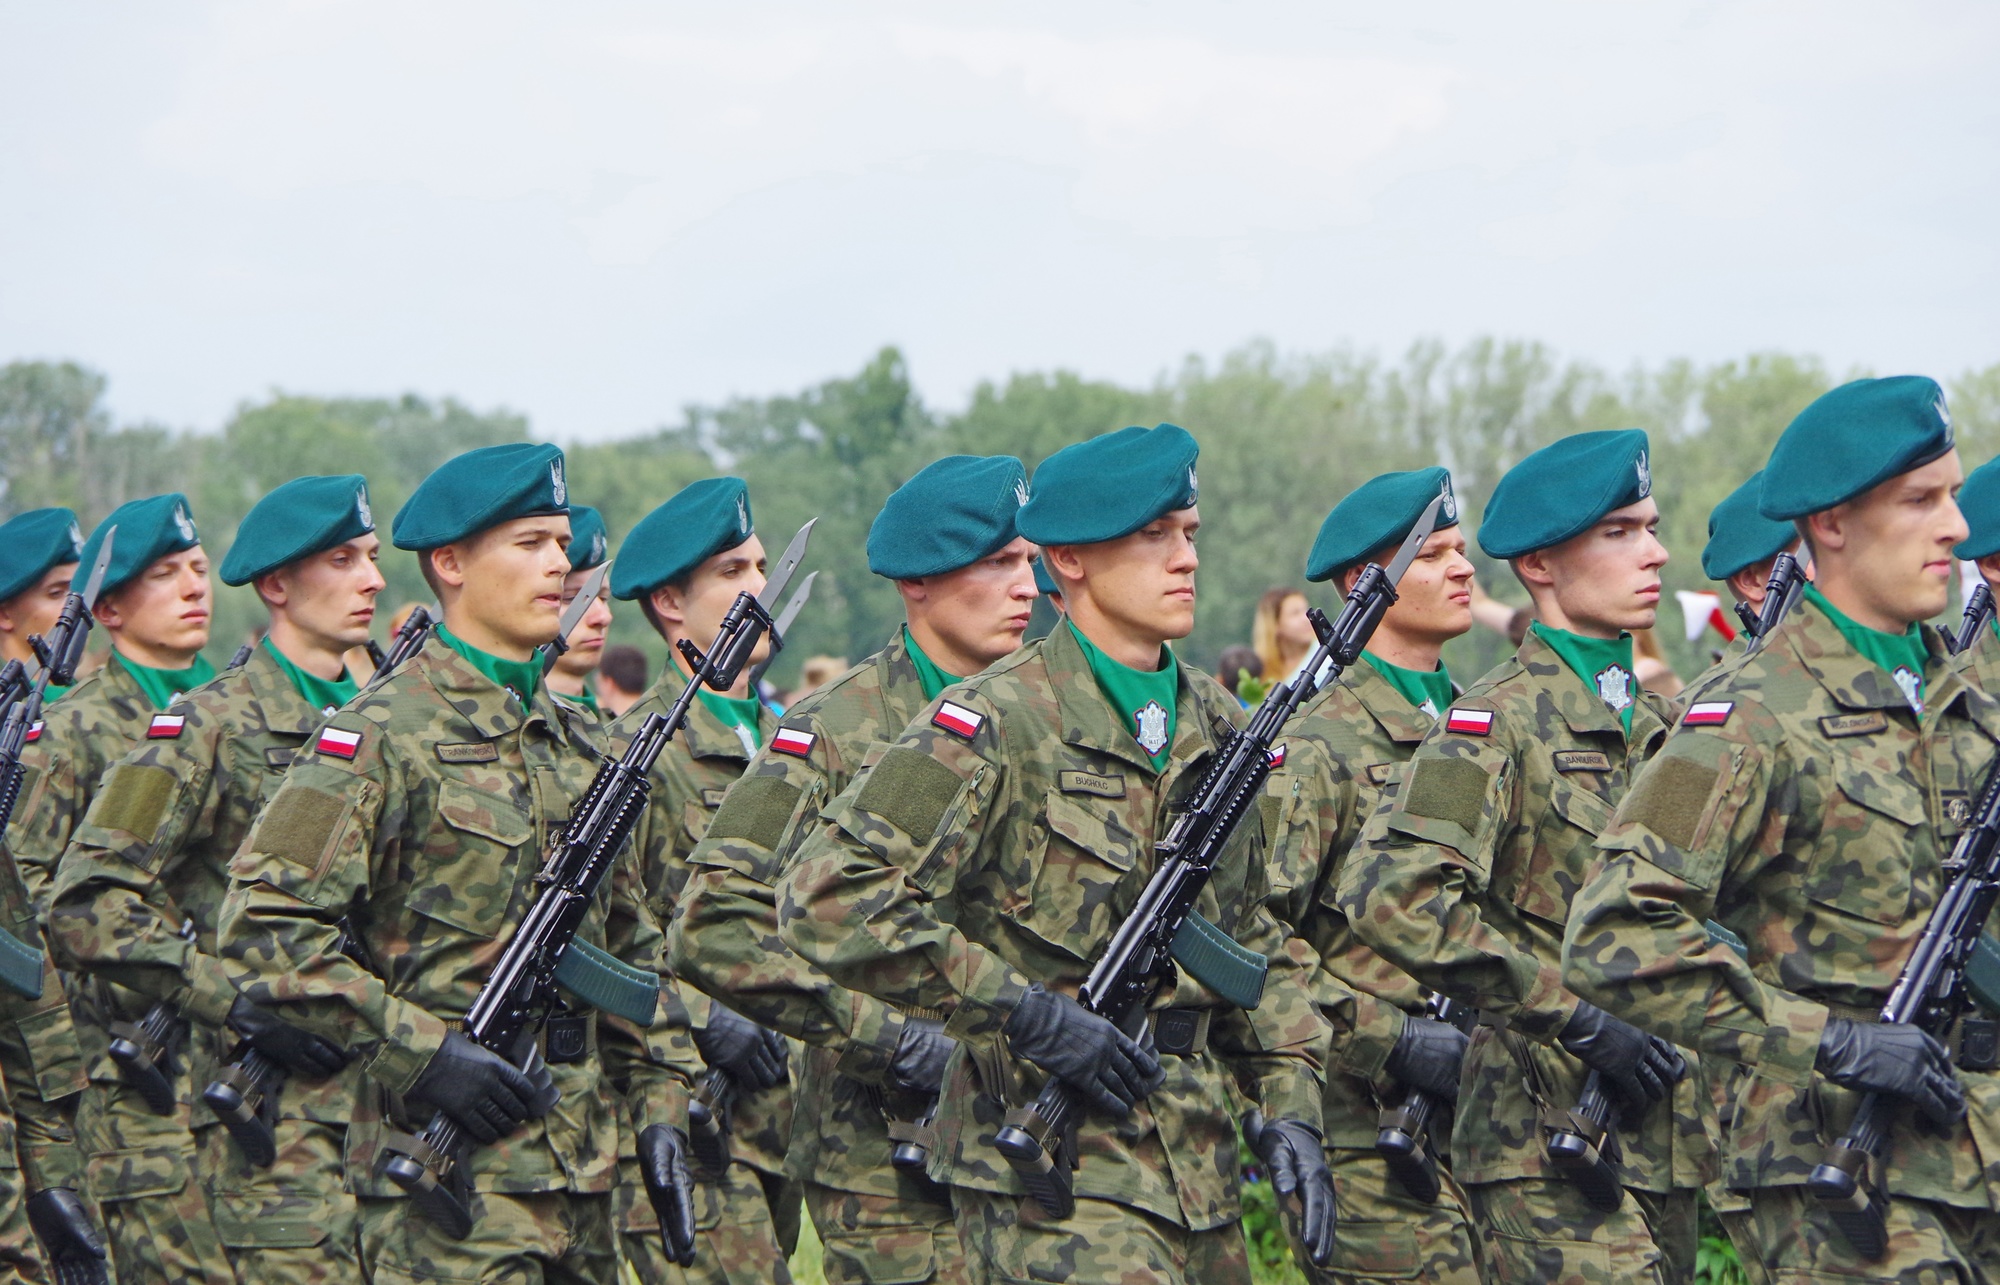 Wydatki na wojsko i obronność - raport SIPRI za 2018 rok